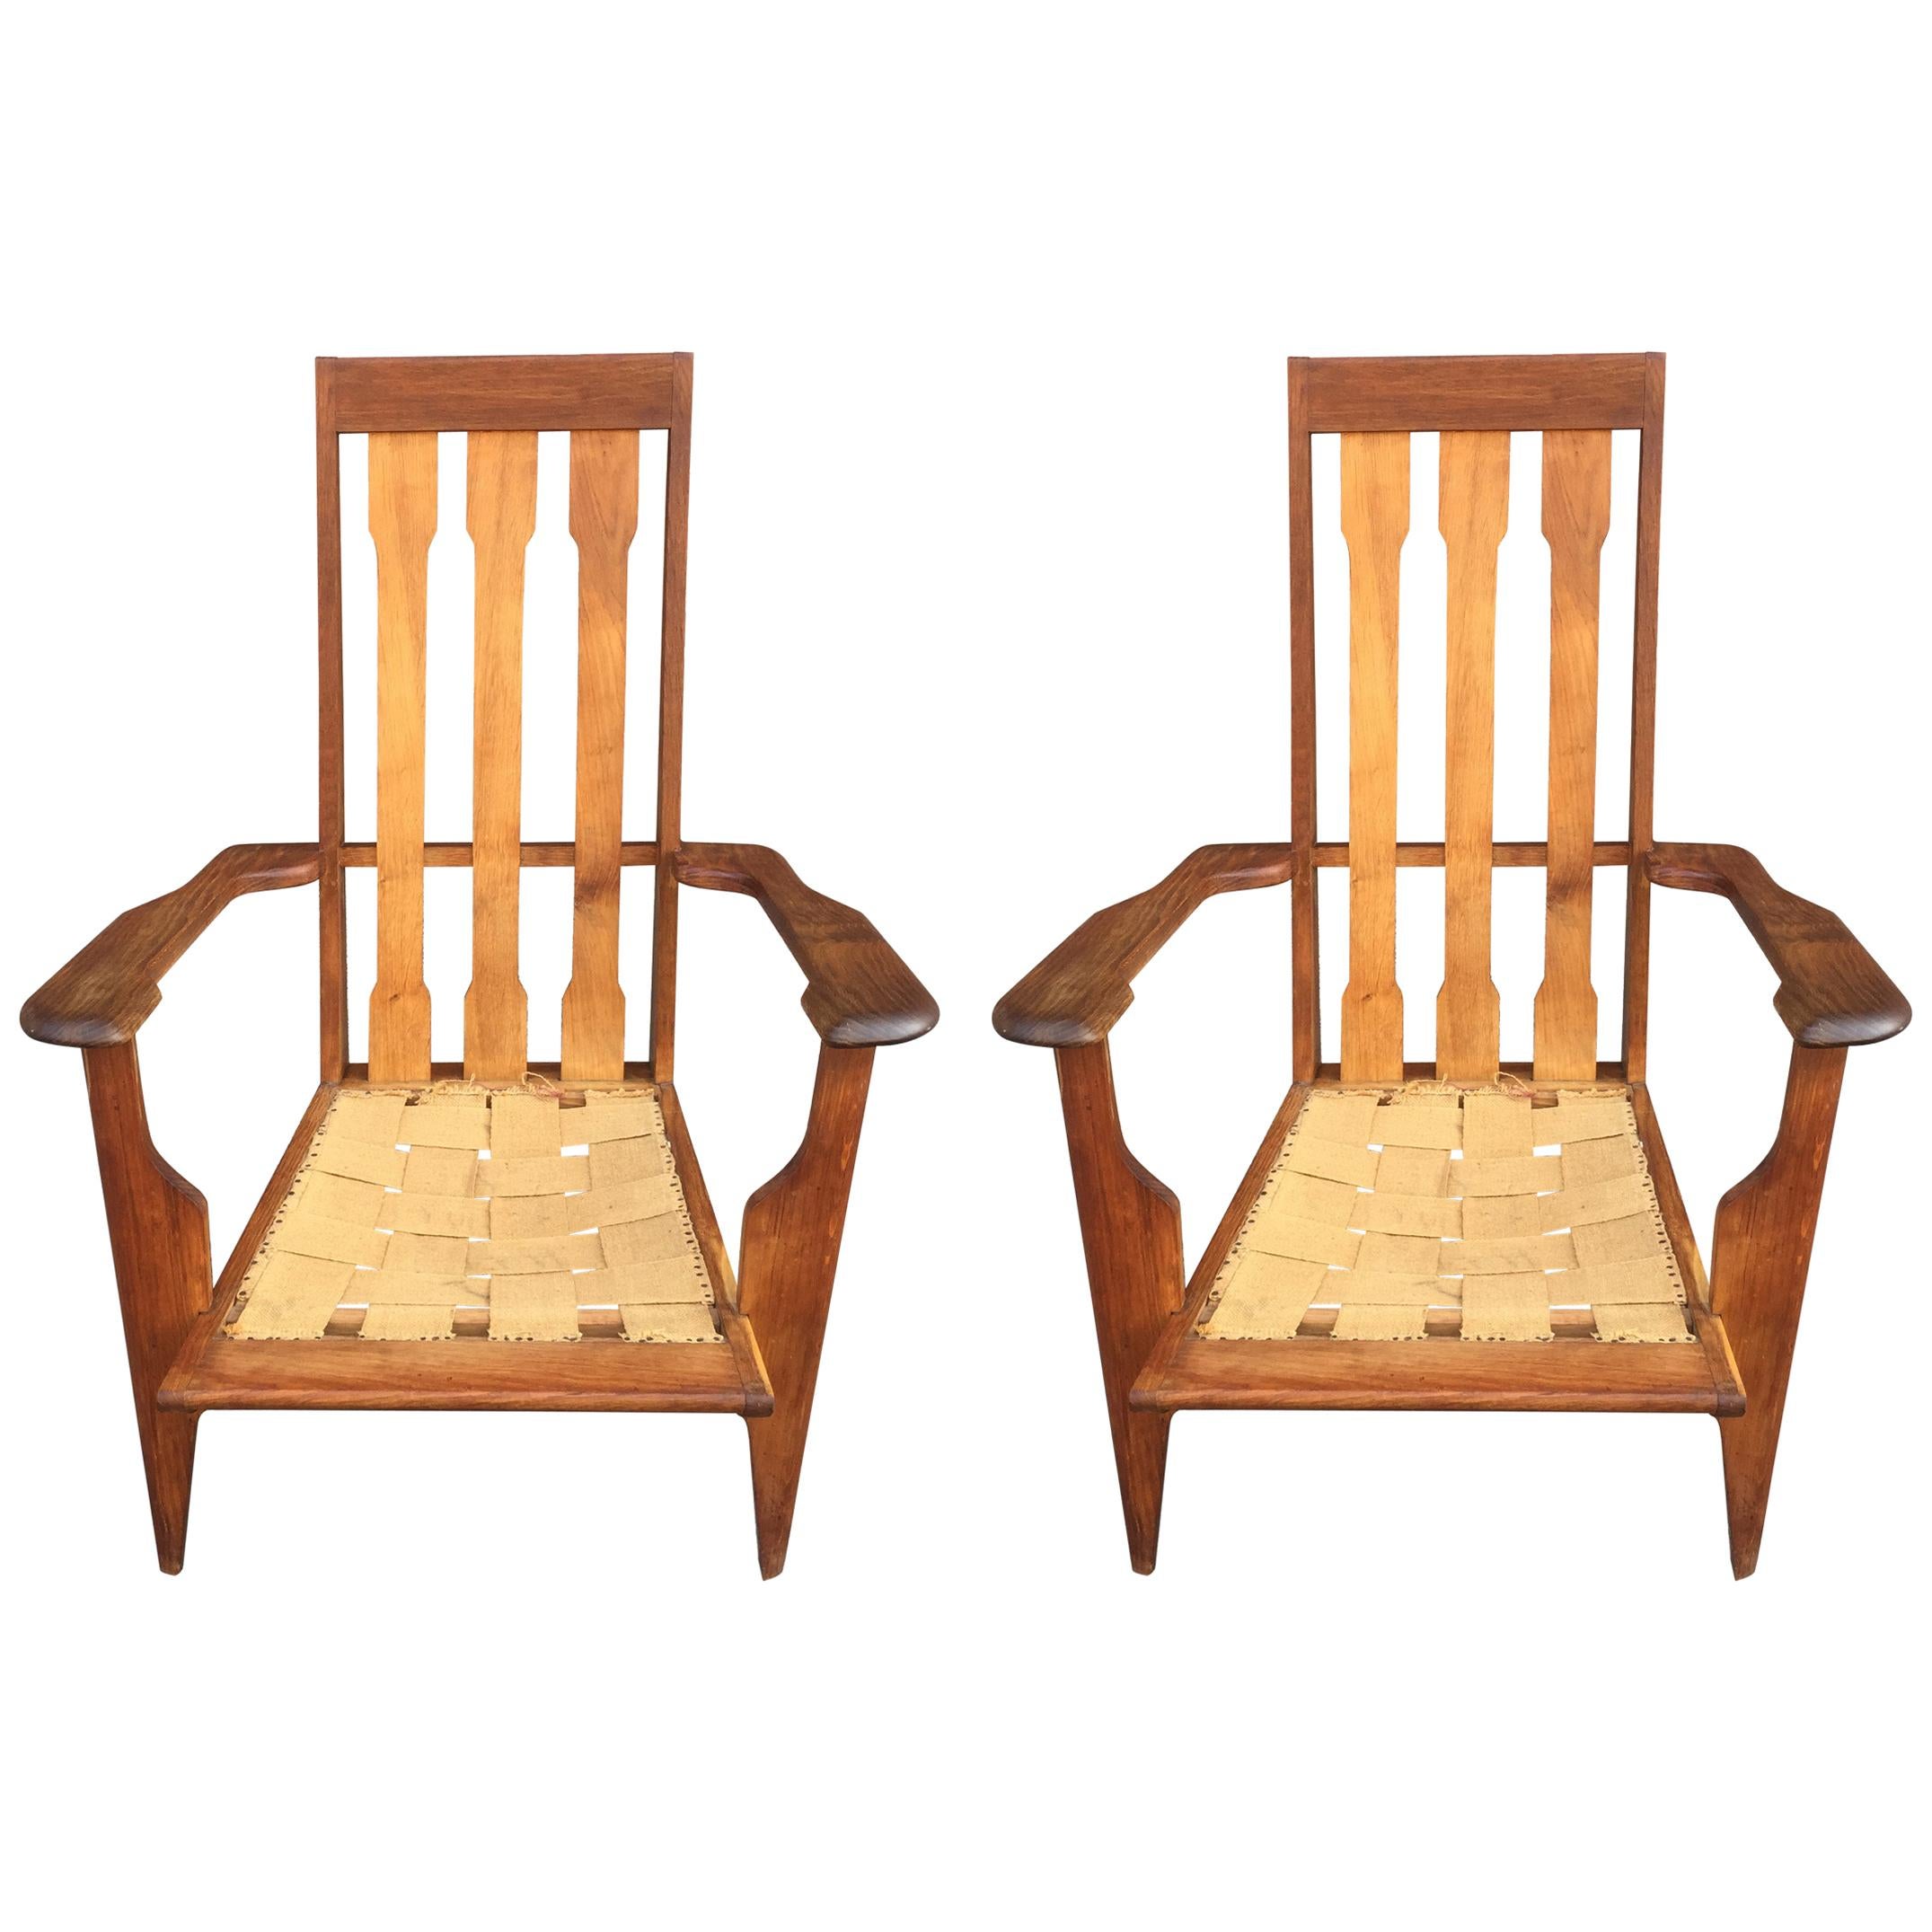 Paire de fauteuils en chêne, datant d'environ 1950